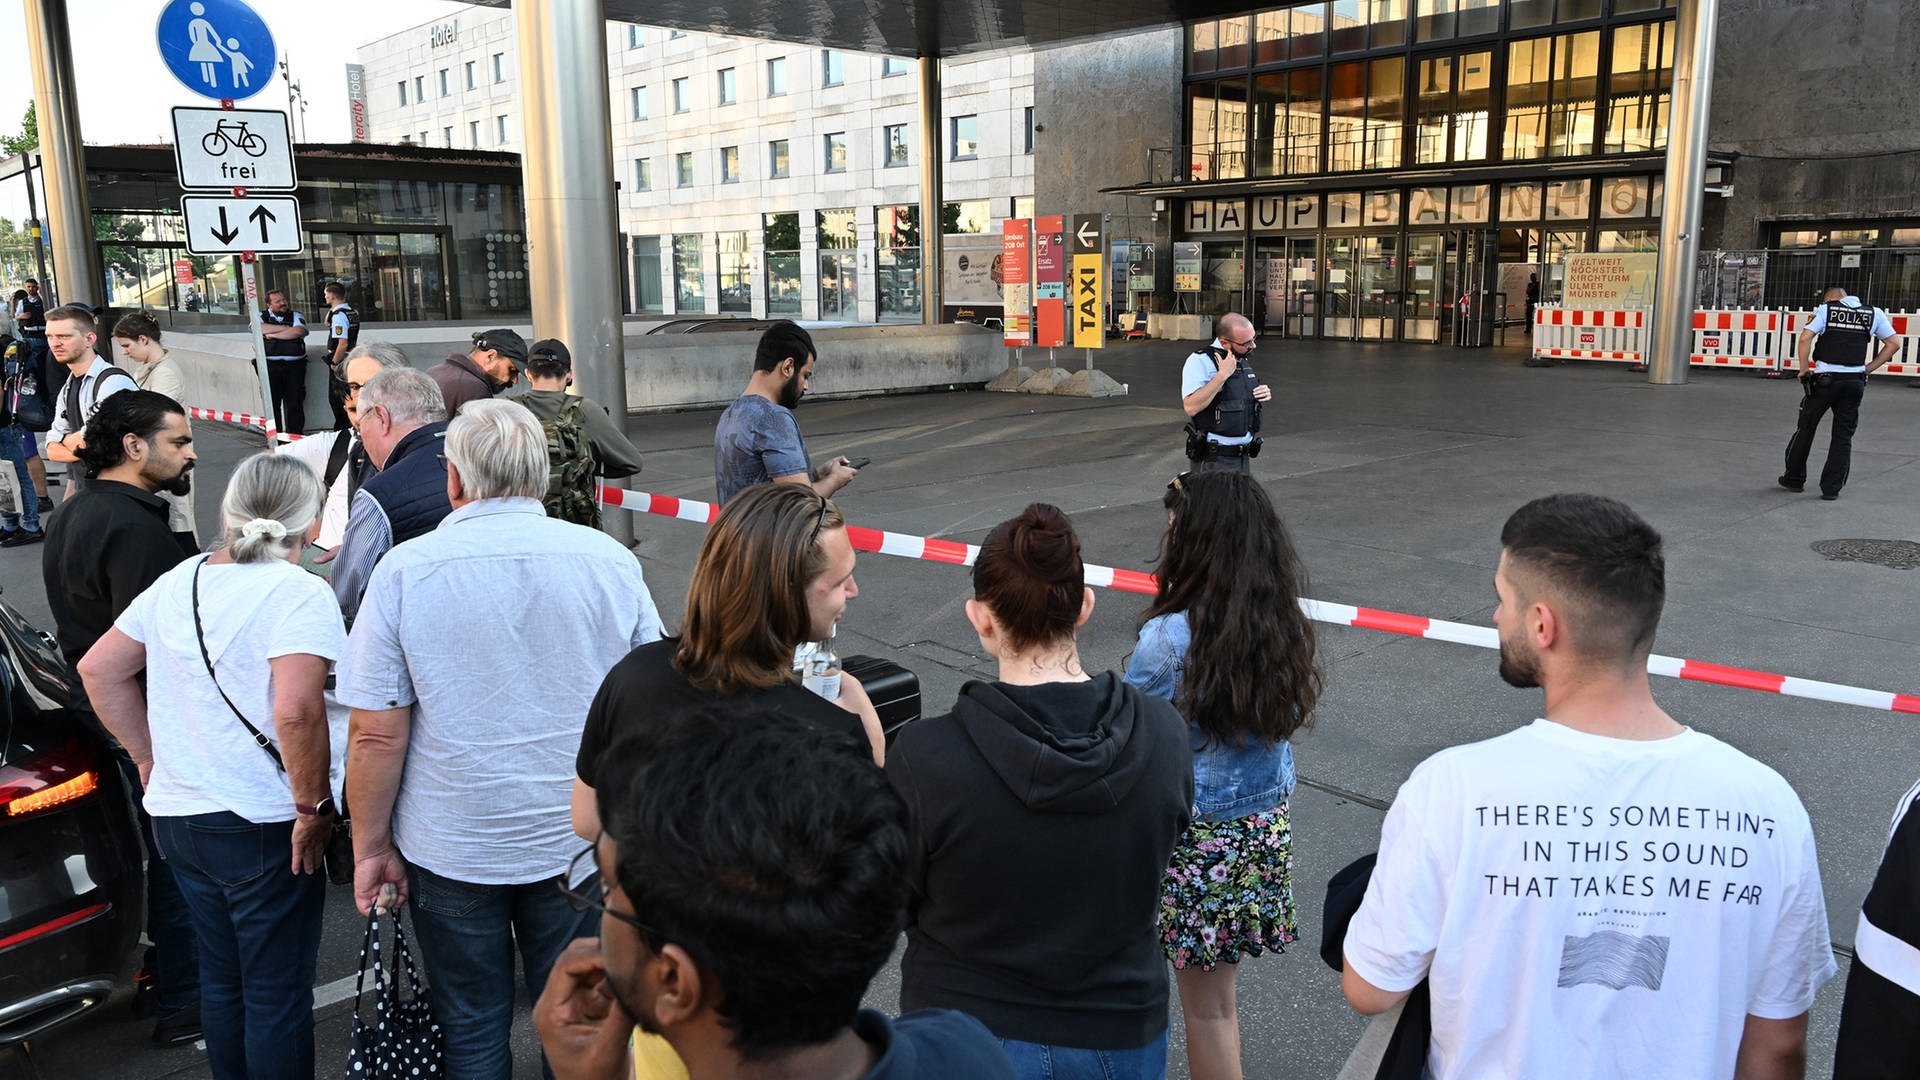 Wegen schriftlicher Drohung: Ulmer Hauptbahnhof von Polizei zeitweise gesperrt